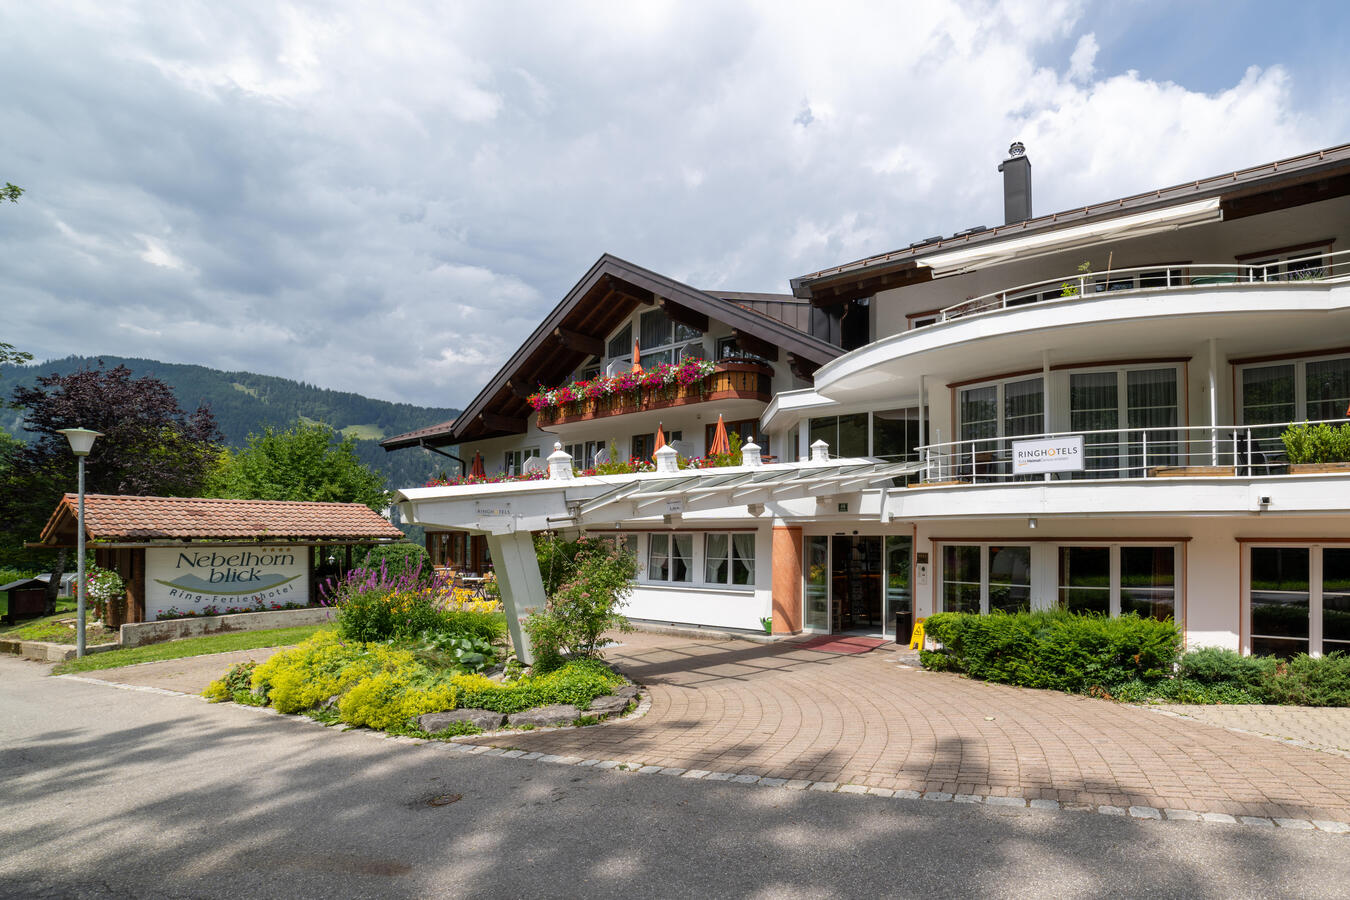 Aussenansicht Ringhotel Nebelhornblick, 4-Sterne Hotel im Allgäu